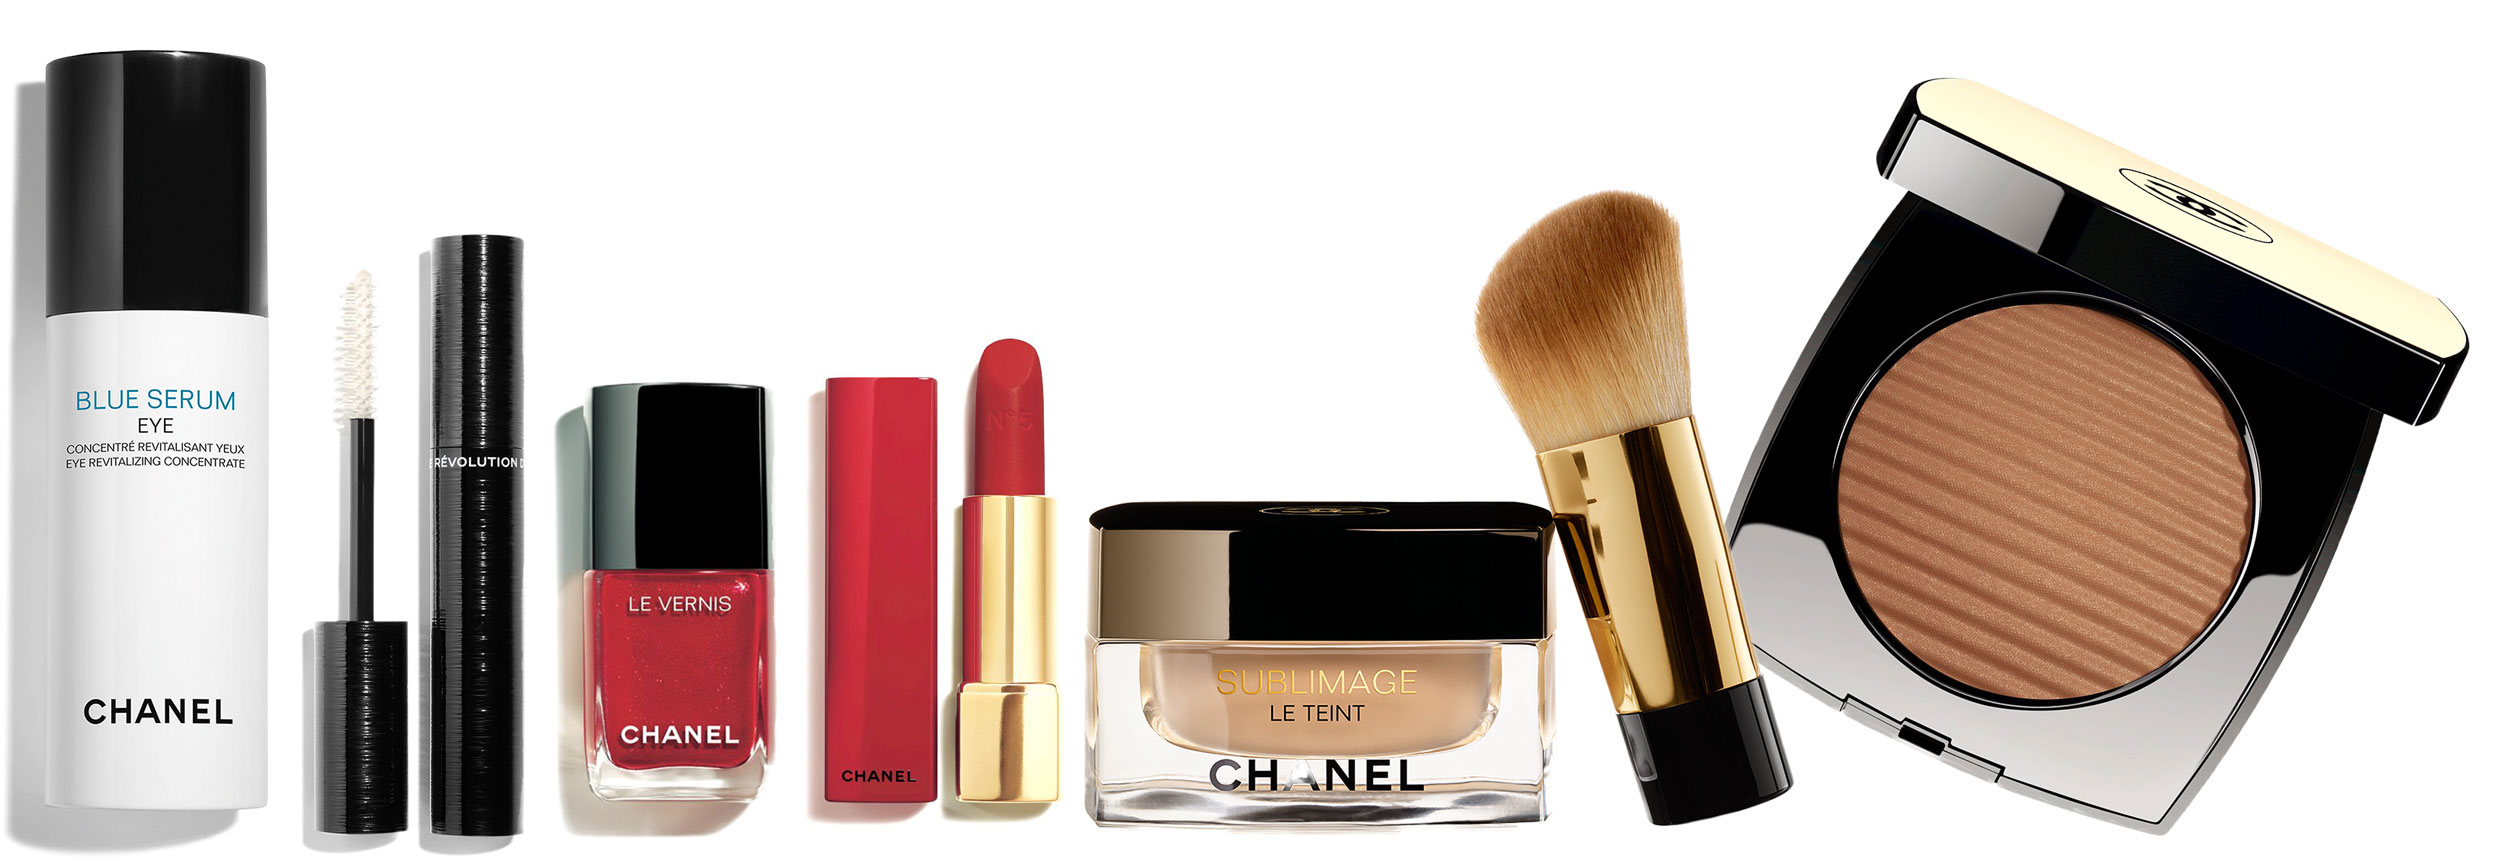  Chanel Sublimage Le Teint Background Makeup, Plus